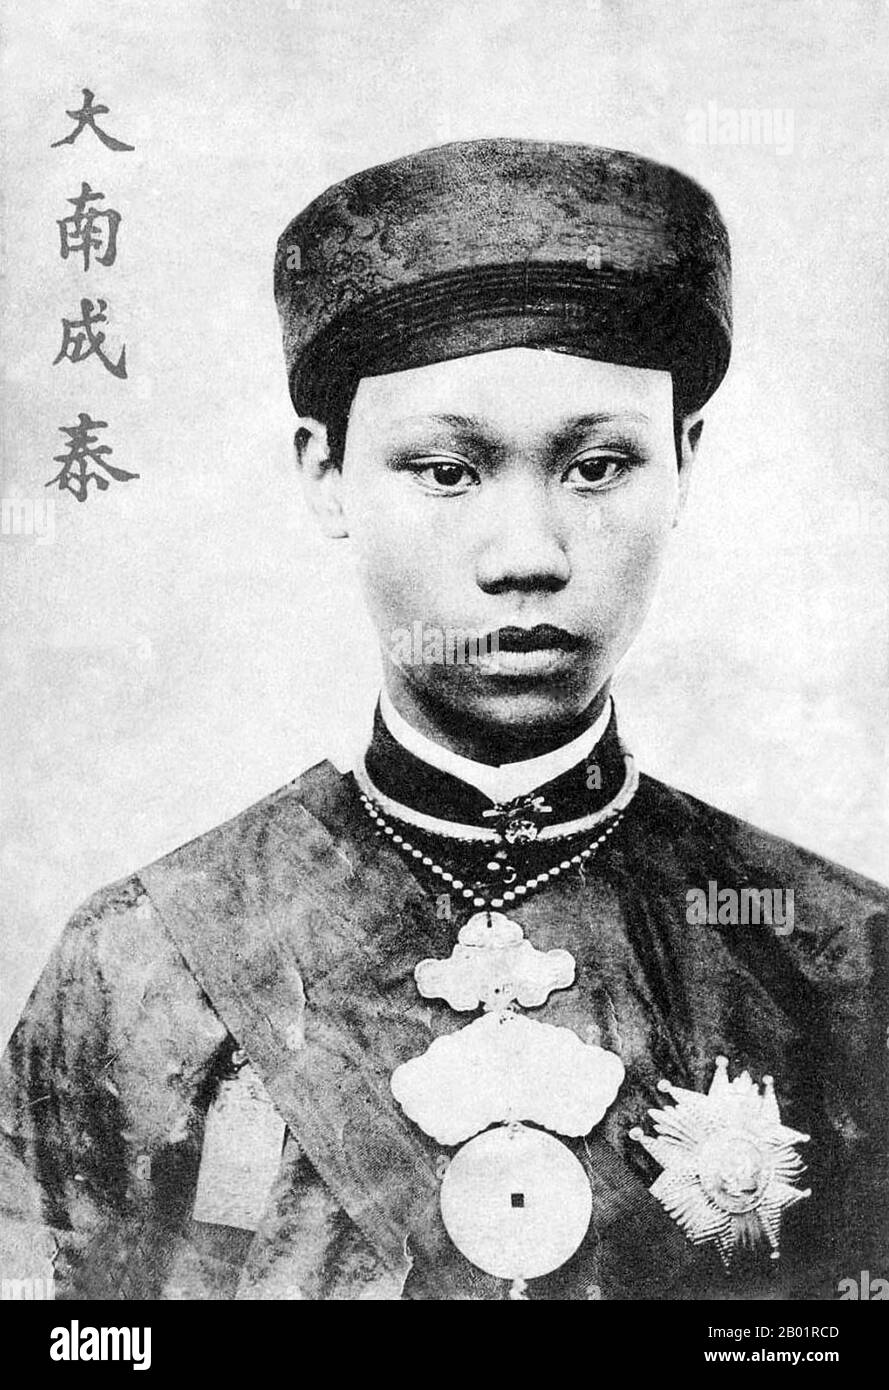 Vietnam : Roi Thanh Thai (14 mars 1879 - 24 mars 1954), empereur Nguyen du Vietnam. Carte postale de Pierre Dieulefils (21 janvier 1862 - 19 novembre 1937), c. 1900s. L'empereur Thành Thái de la dynastie vietnamienne Nguyễn est né prince Nguyễn Phúc Bửu Lân, fils de l'empereur Duc Duc. Il règne pendant 18 ans, de 1889 à 1907. Il était l'un des trois empereurs patriotiques de l'histoire vietnamienne, aux côtés de Ham Nghi et Duy Tan (son fils), pour leurs actions et leurs opinions contre la domination coloniale française au Vietnam. Banque D'Images